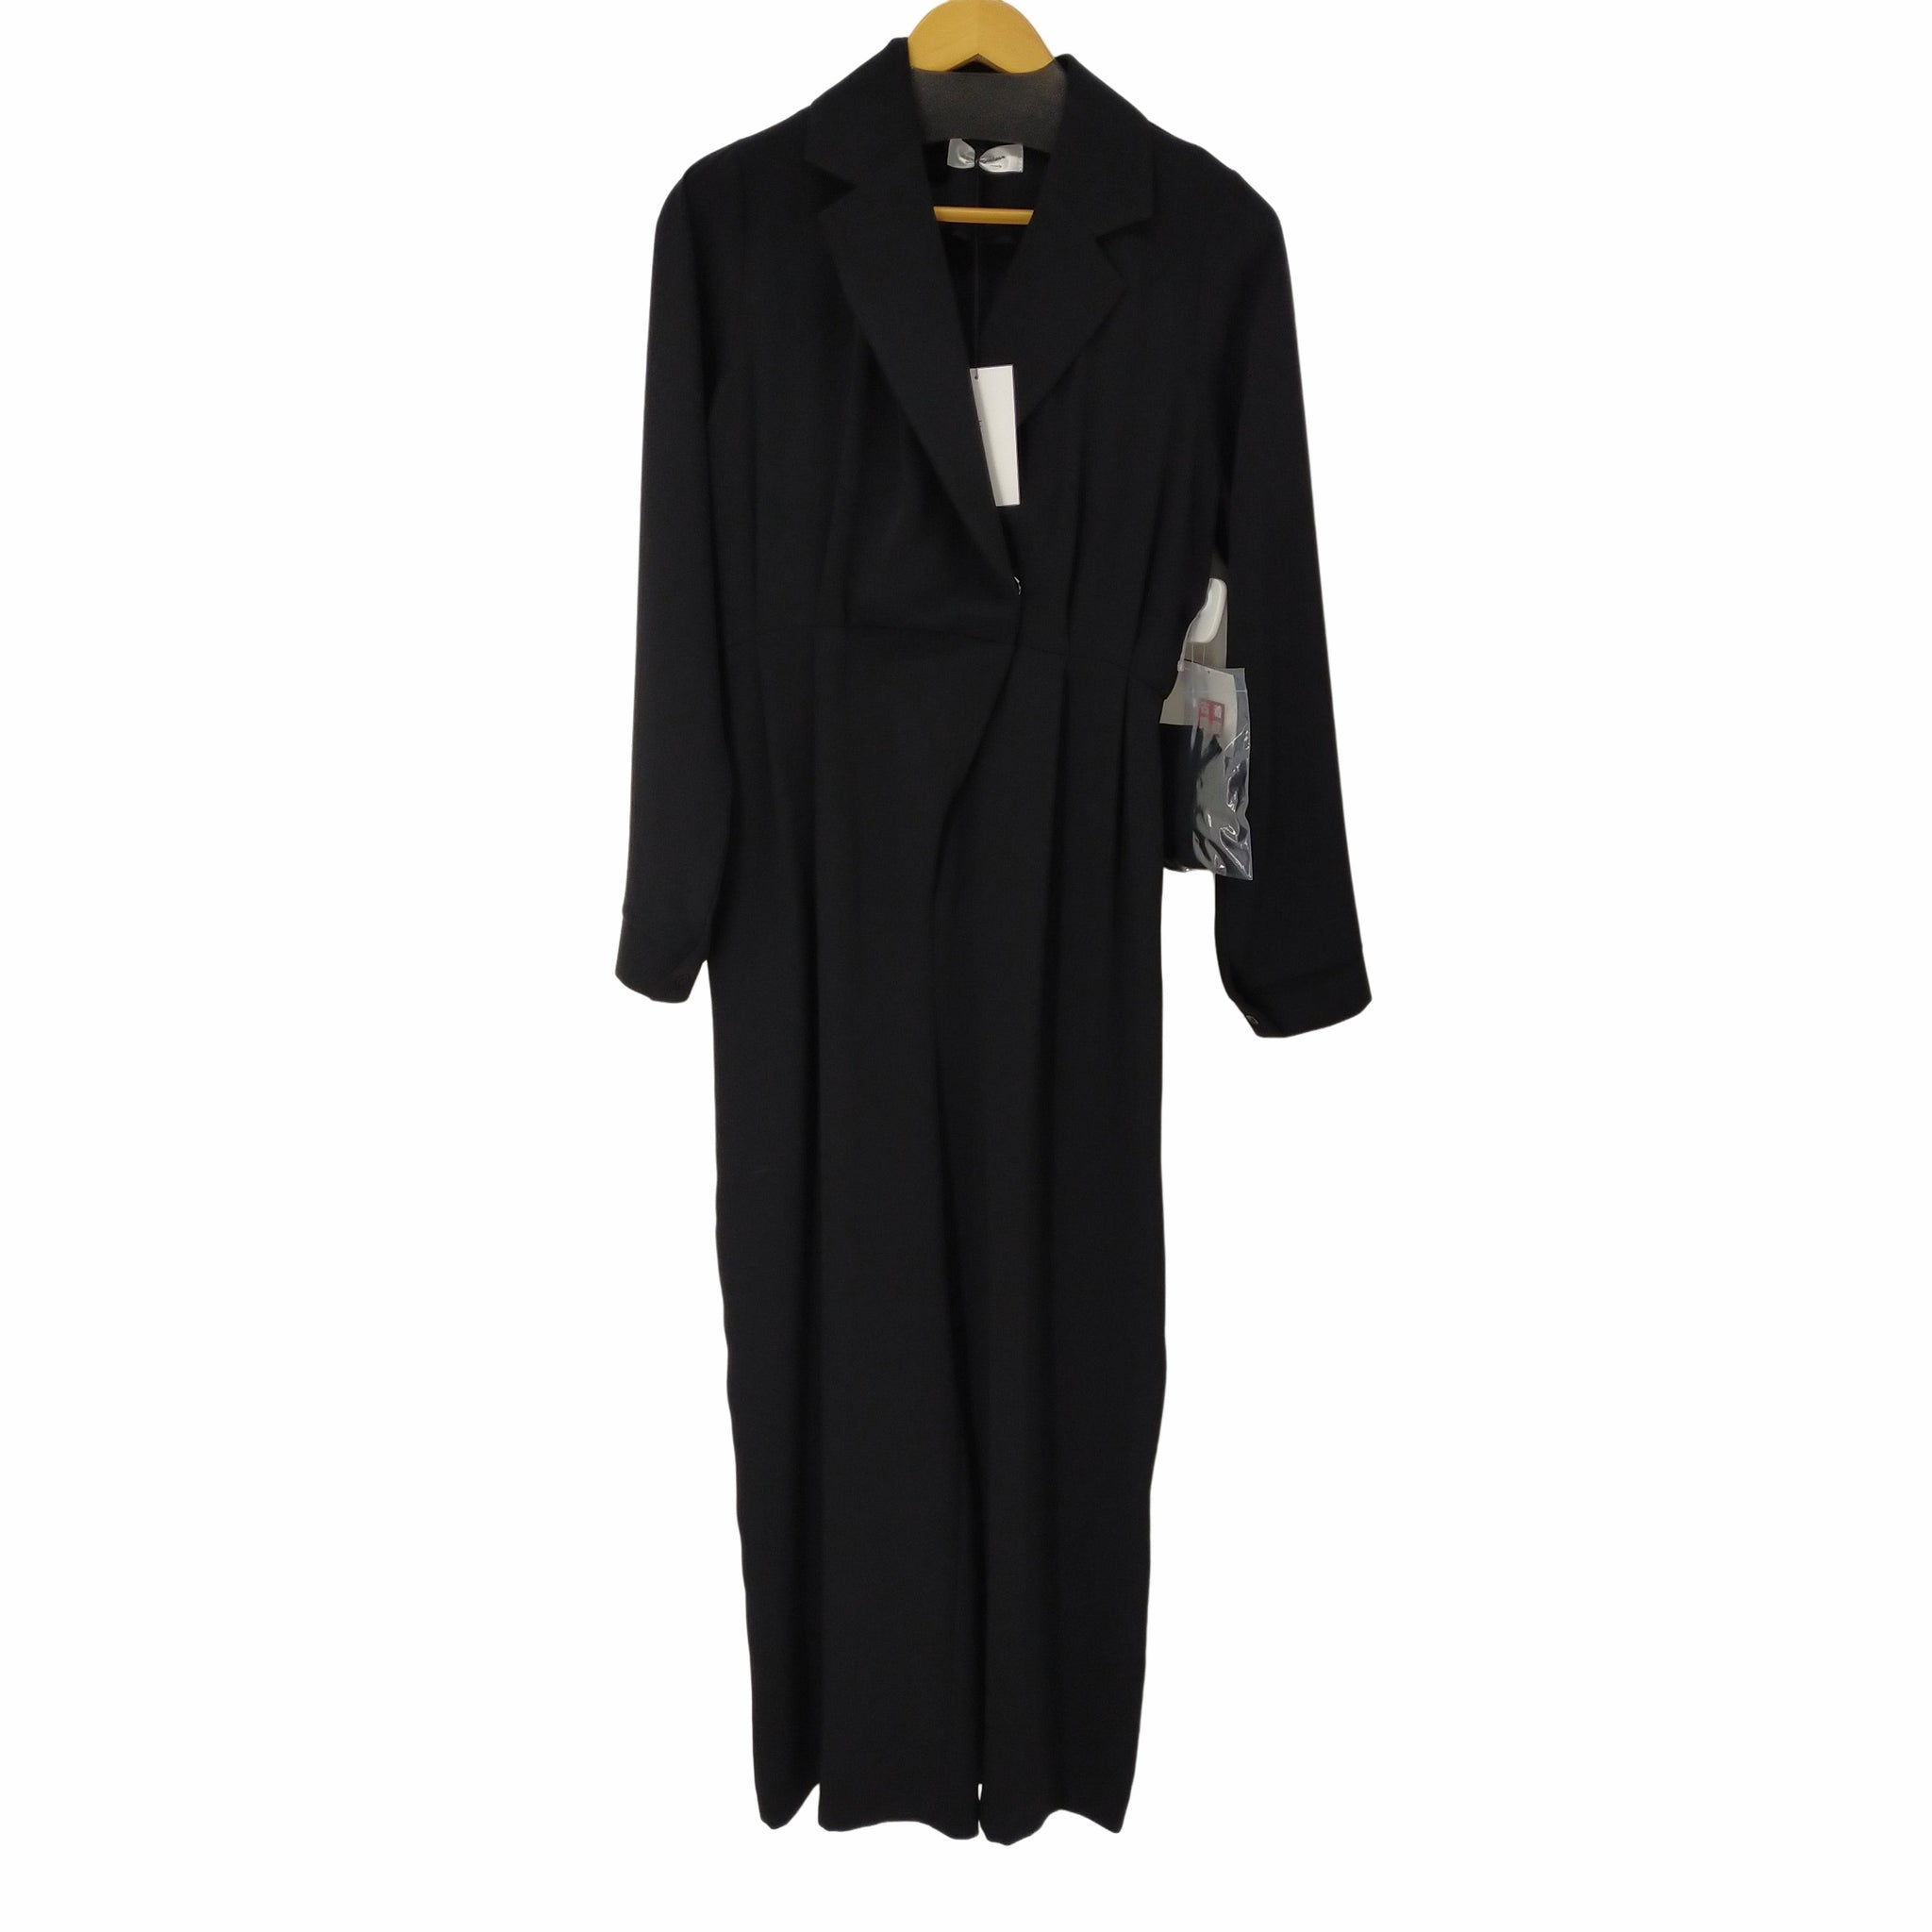 marjour(マージュール)OPENCOLLAR DRESS オープンカラー パンツドレス オールインワン ベルト付き